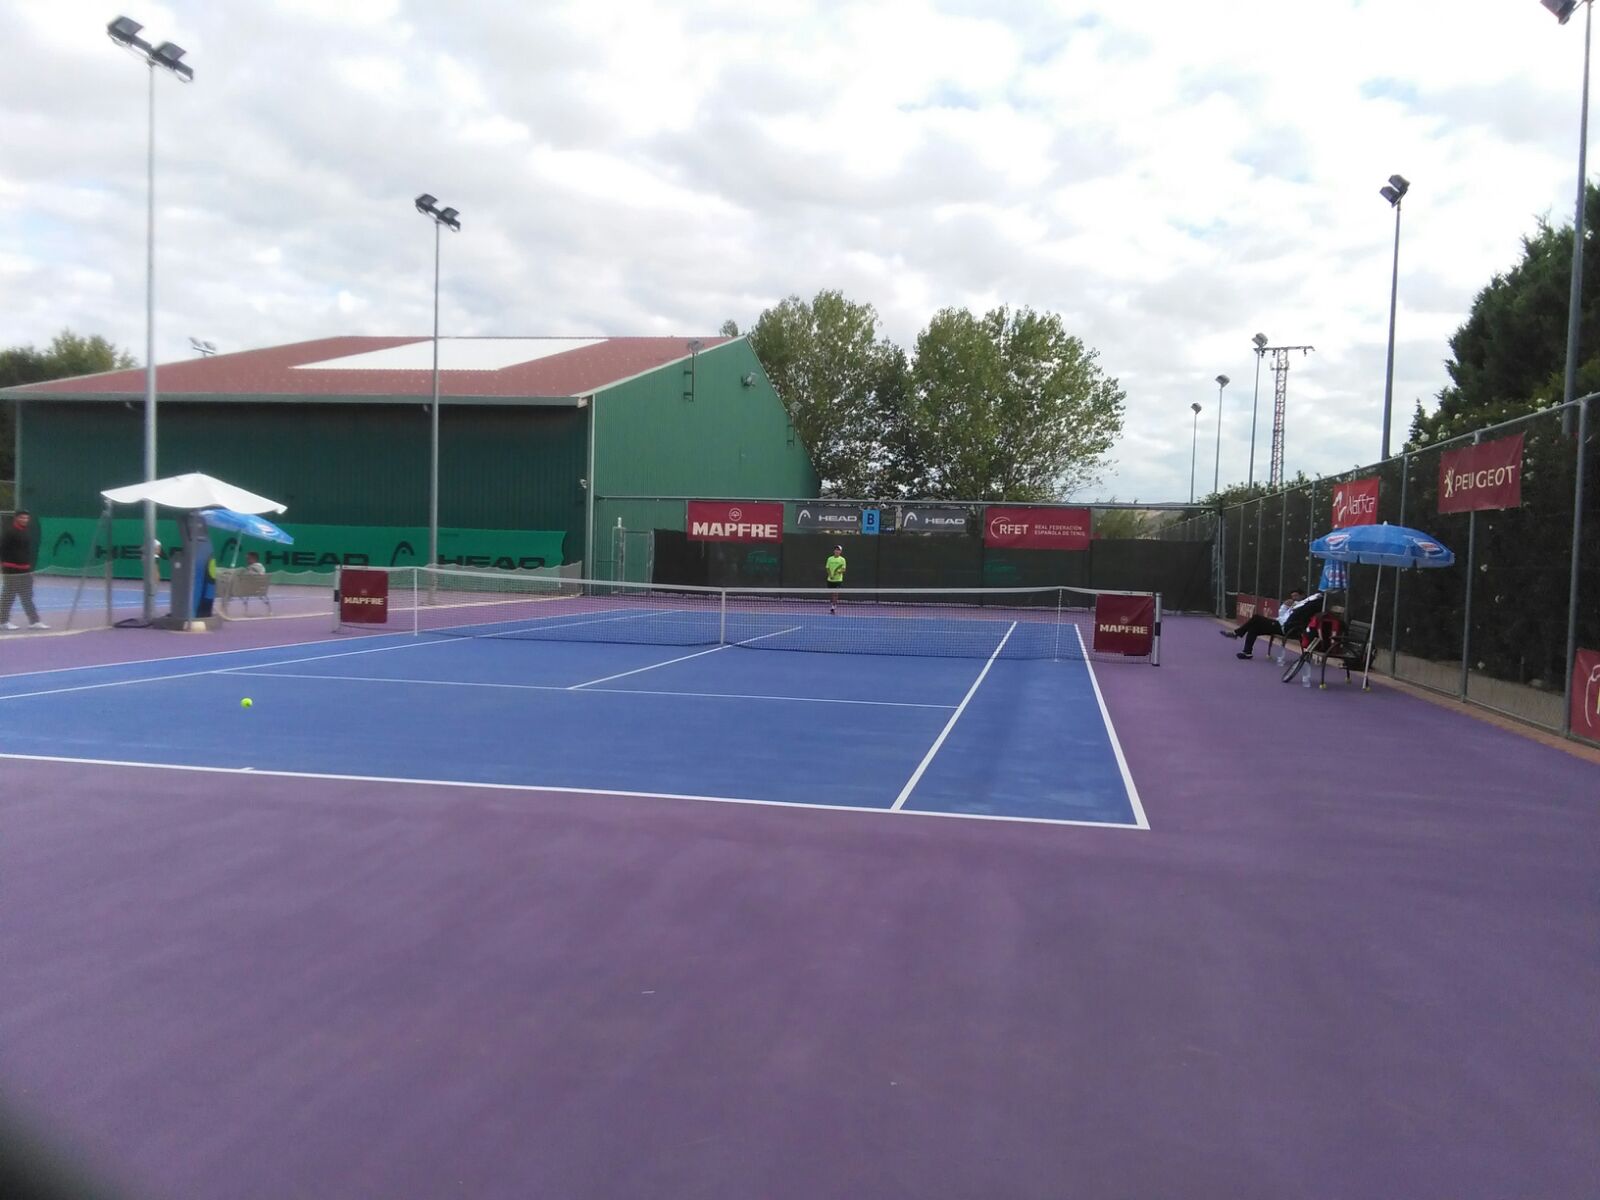 Tennislife y Composan, presentes en el Campeonato de España infantil de tenis 2016 de la academia Equelite Juan Carlos Ferrero.